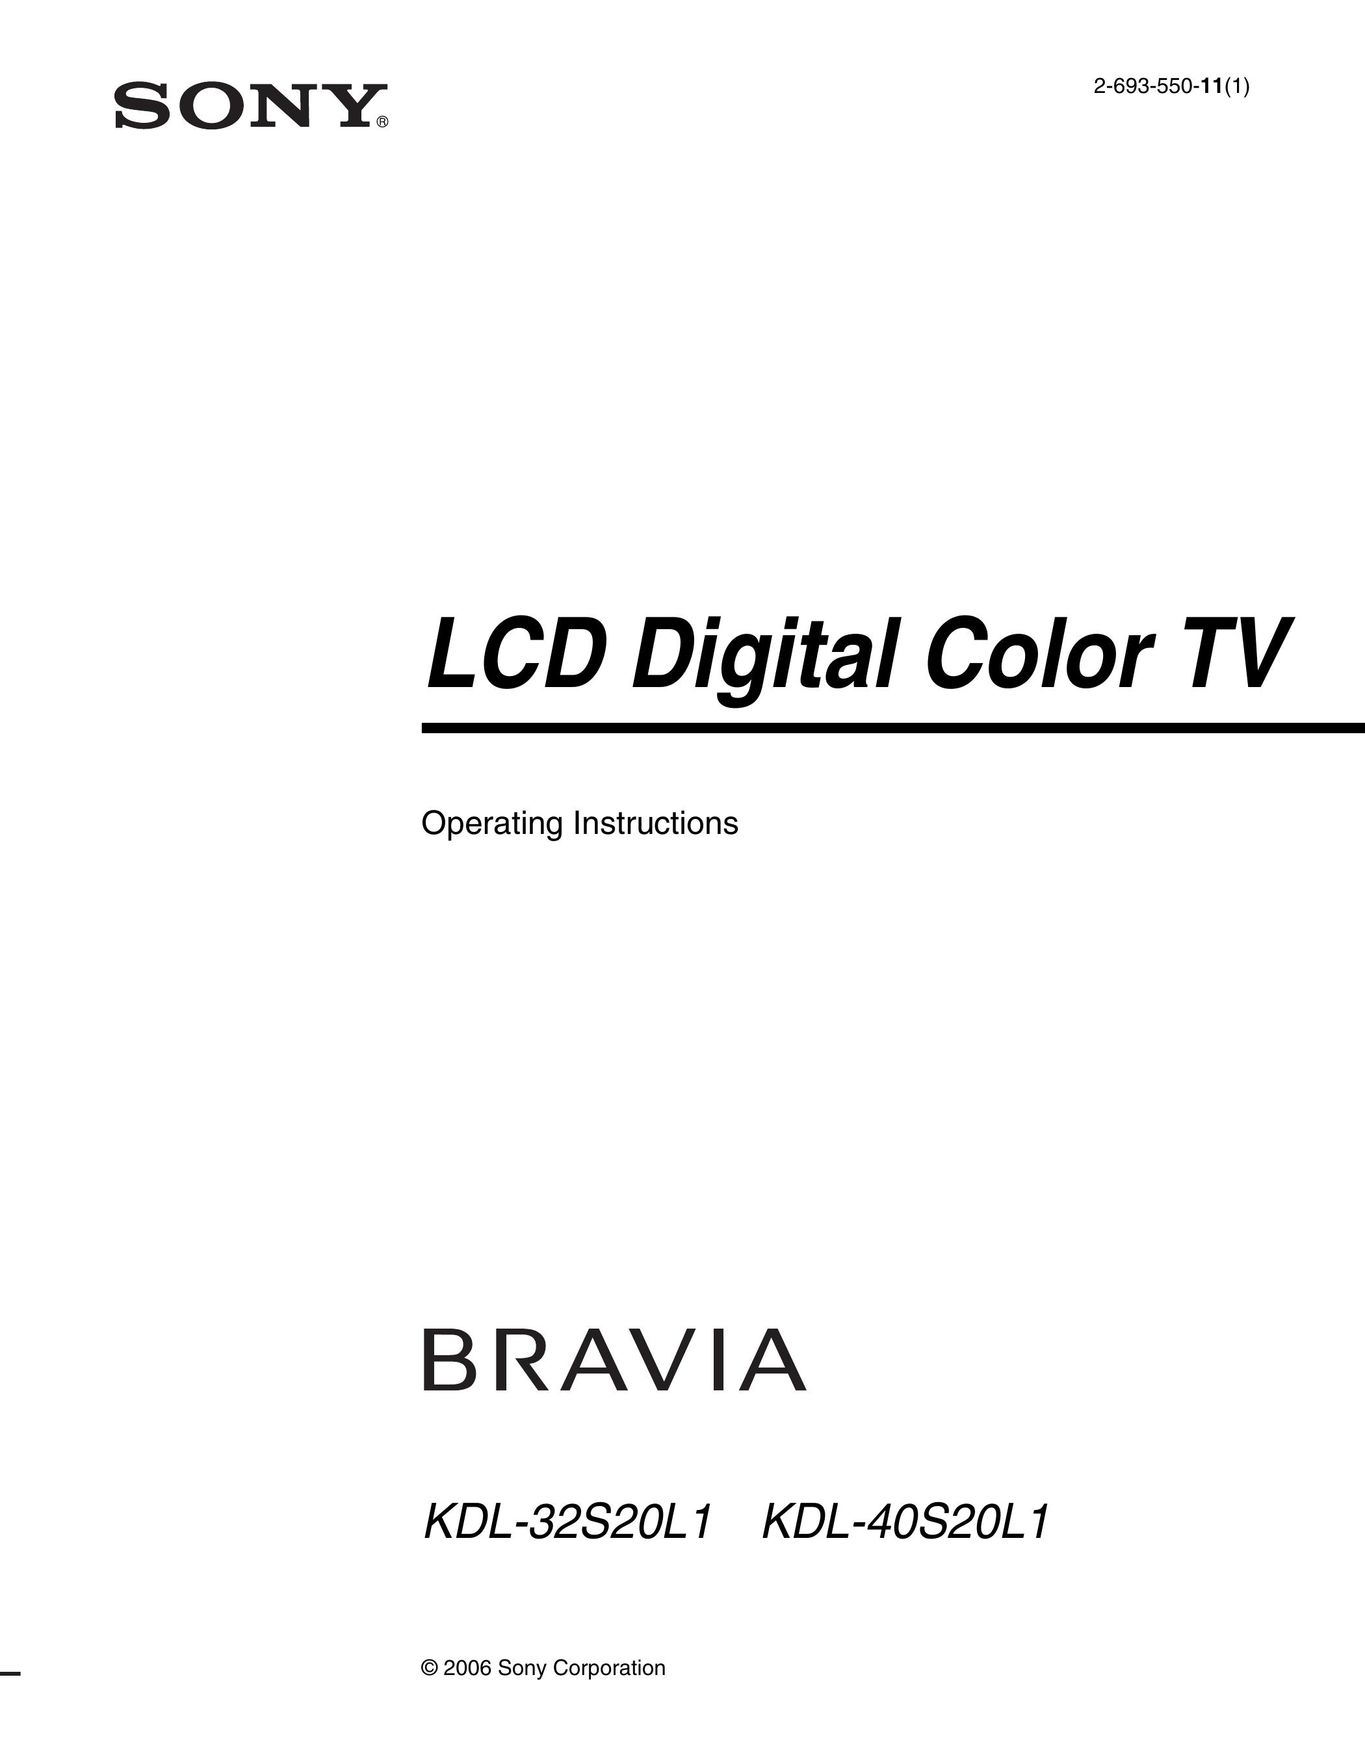 Sony KDL-32S20L1 TV VCR Combo User Manual